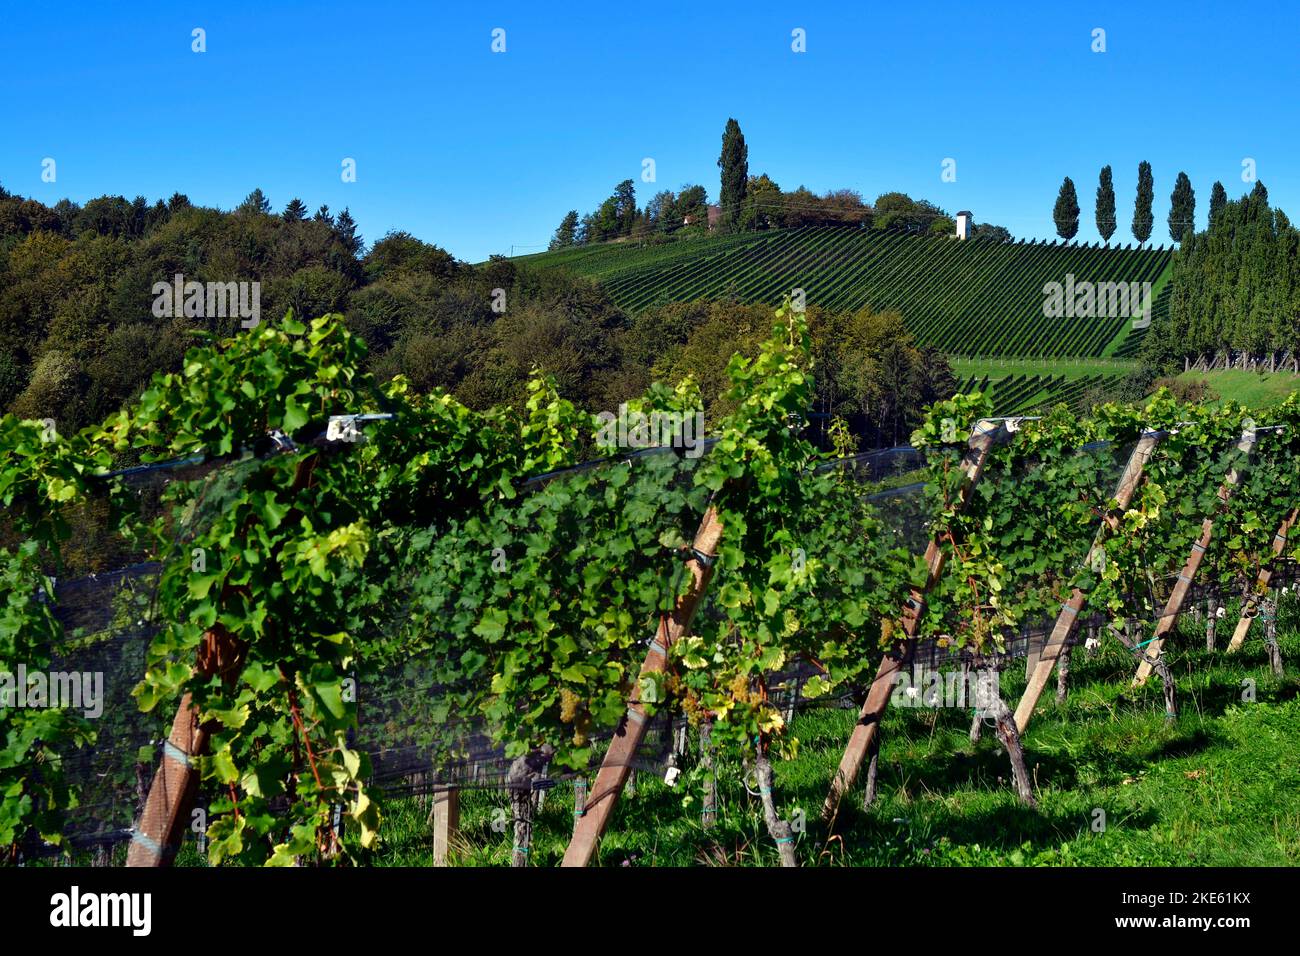 Austria, viñedos en las laderas escarpadas del valle de Sulm situado en la ruta del vino de Estiria, el paisaje montañoso también se conoce como la Toscana de Austr Foto de stock